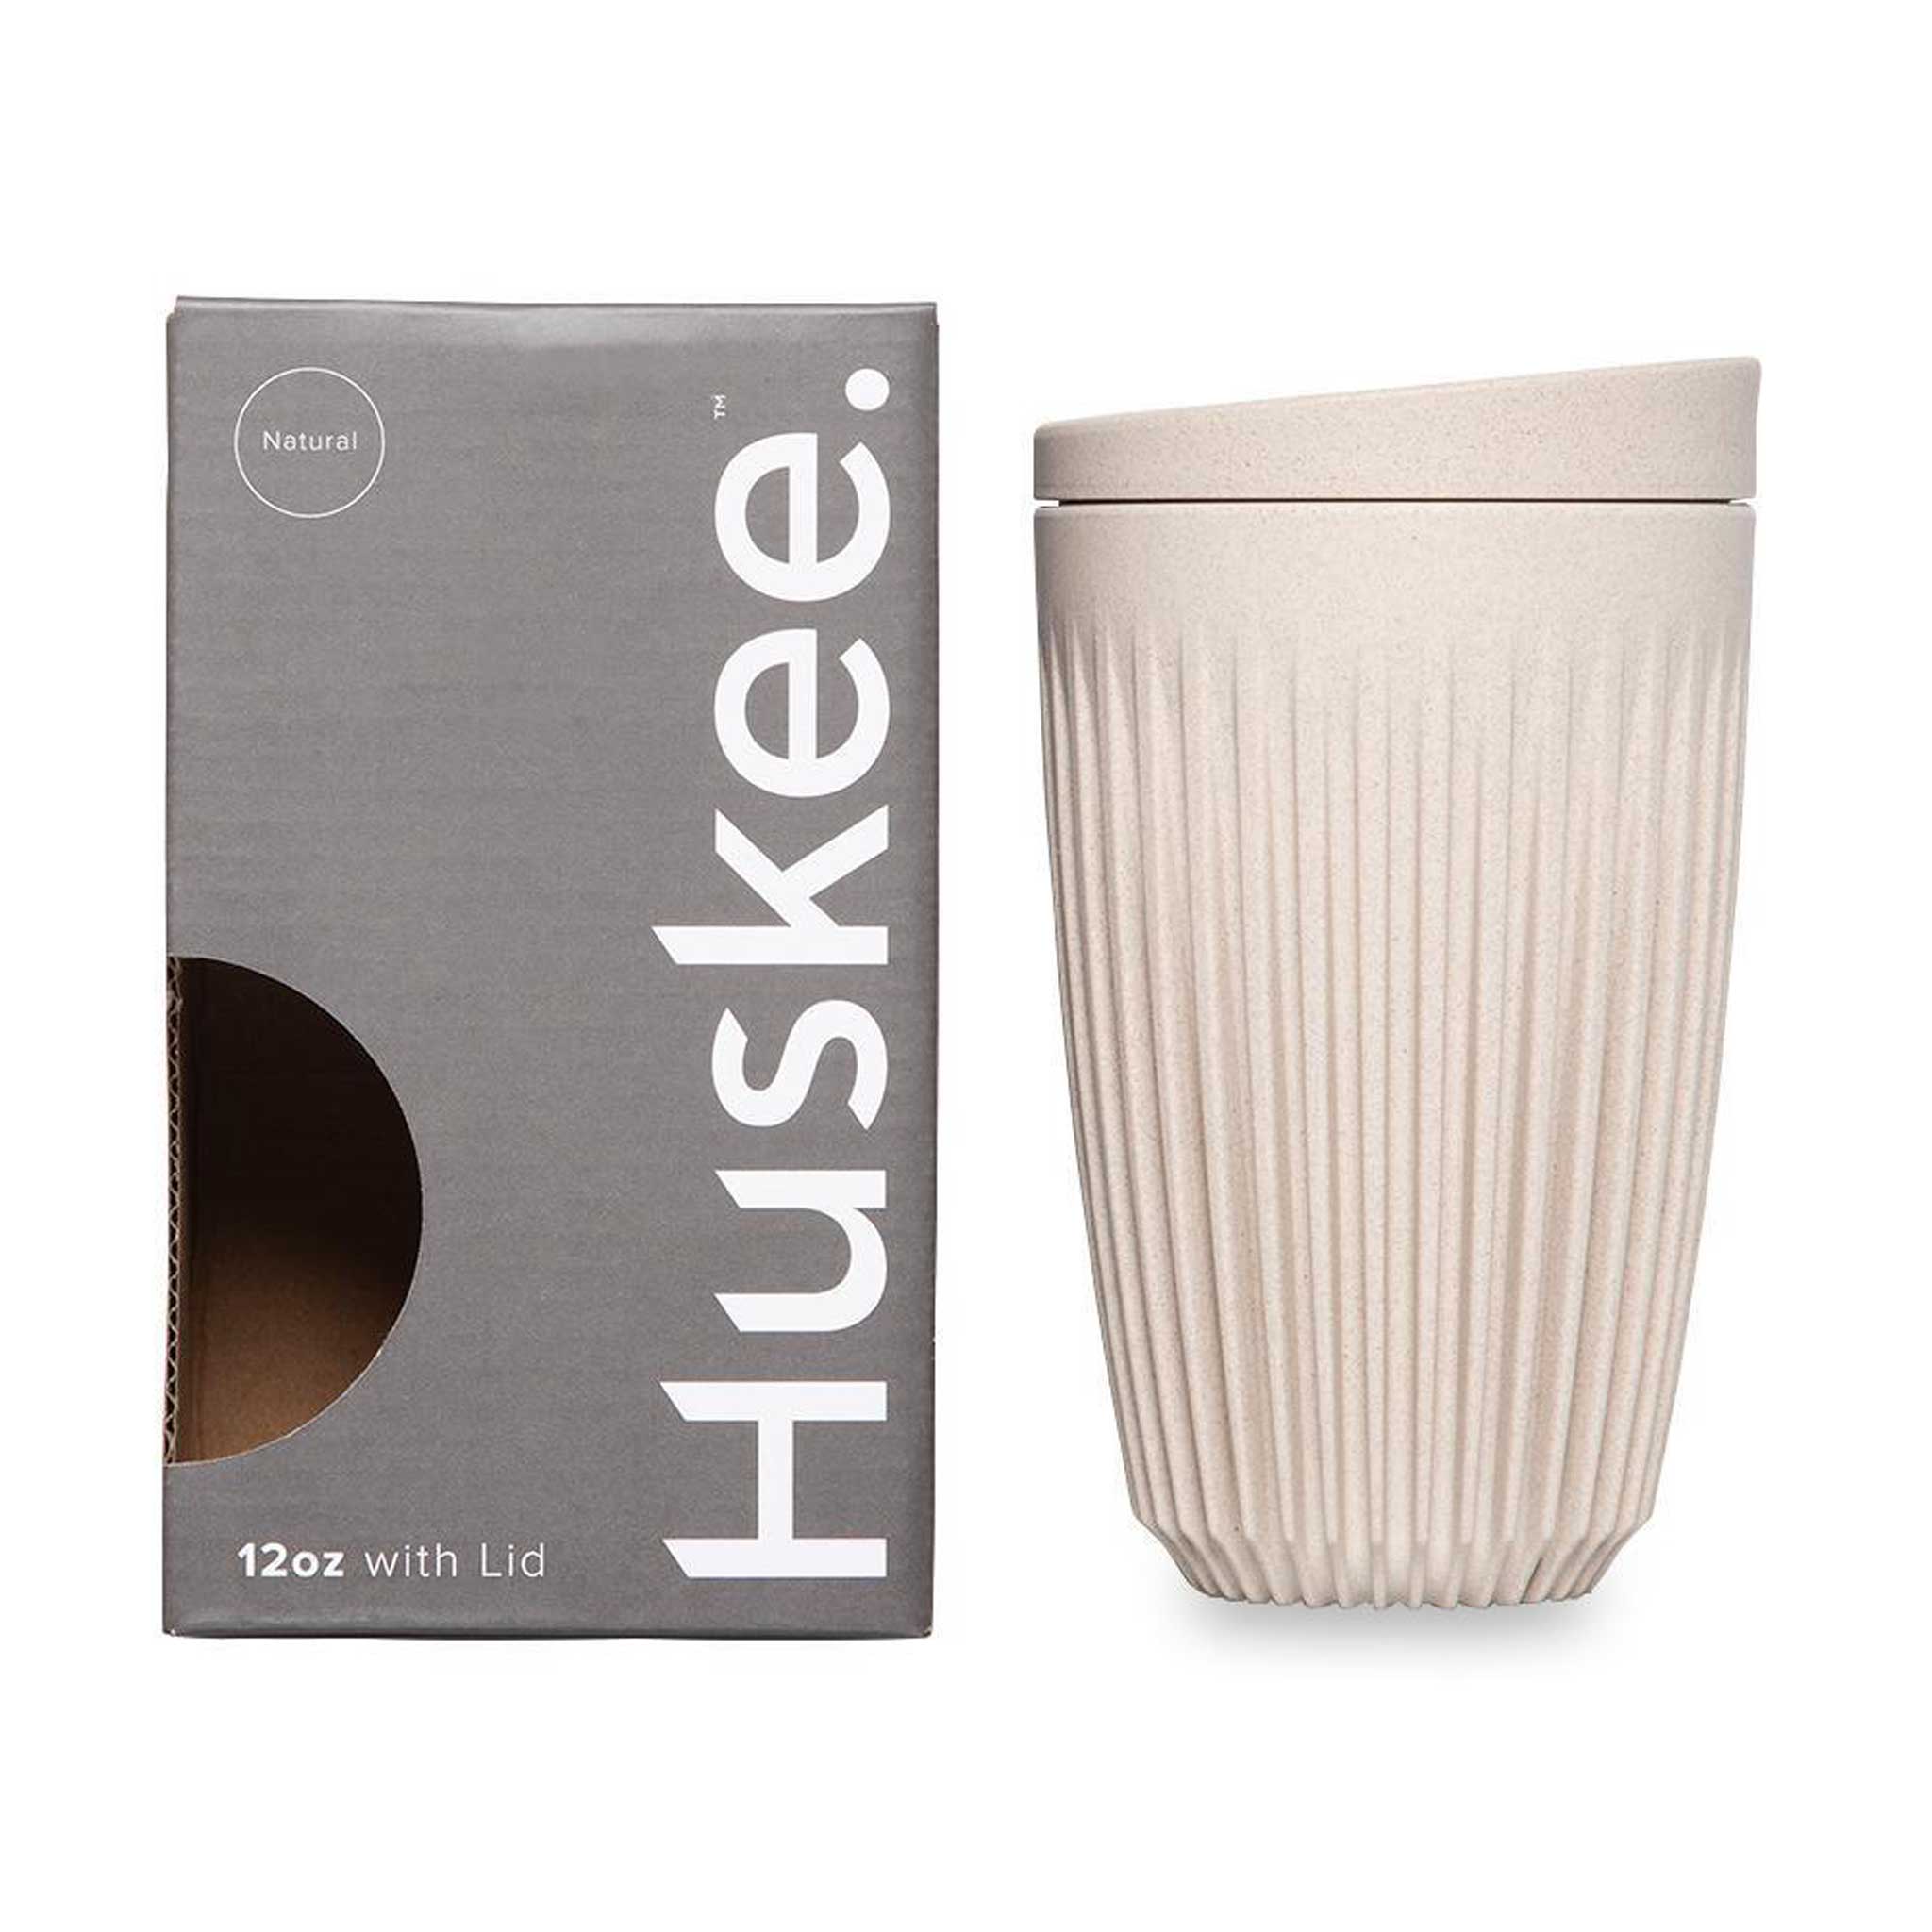 HUSKEE CUP & LID Natur | wiederverwendbare KAFFEE & TEE-BECHER aus Kaffee-Schalen | Huskee - Charles & Marie